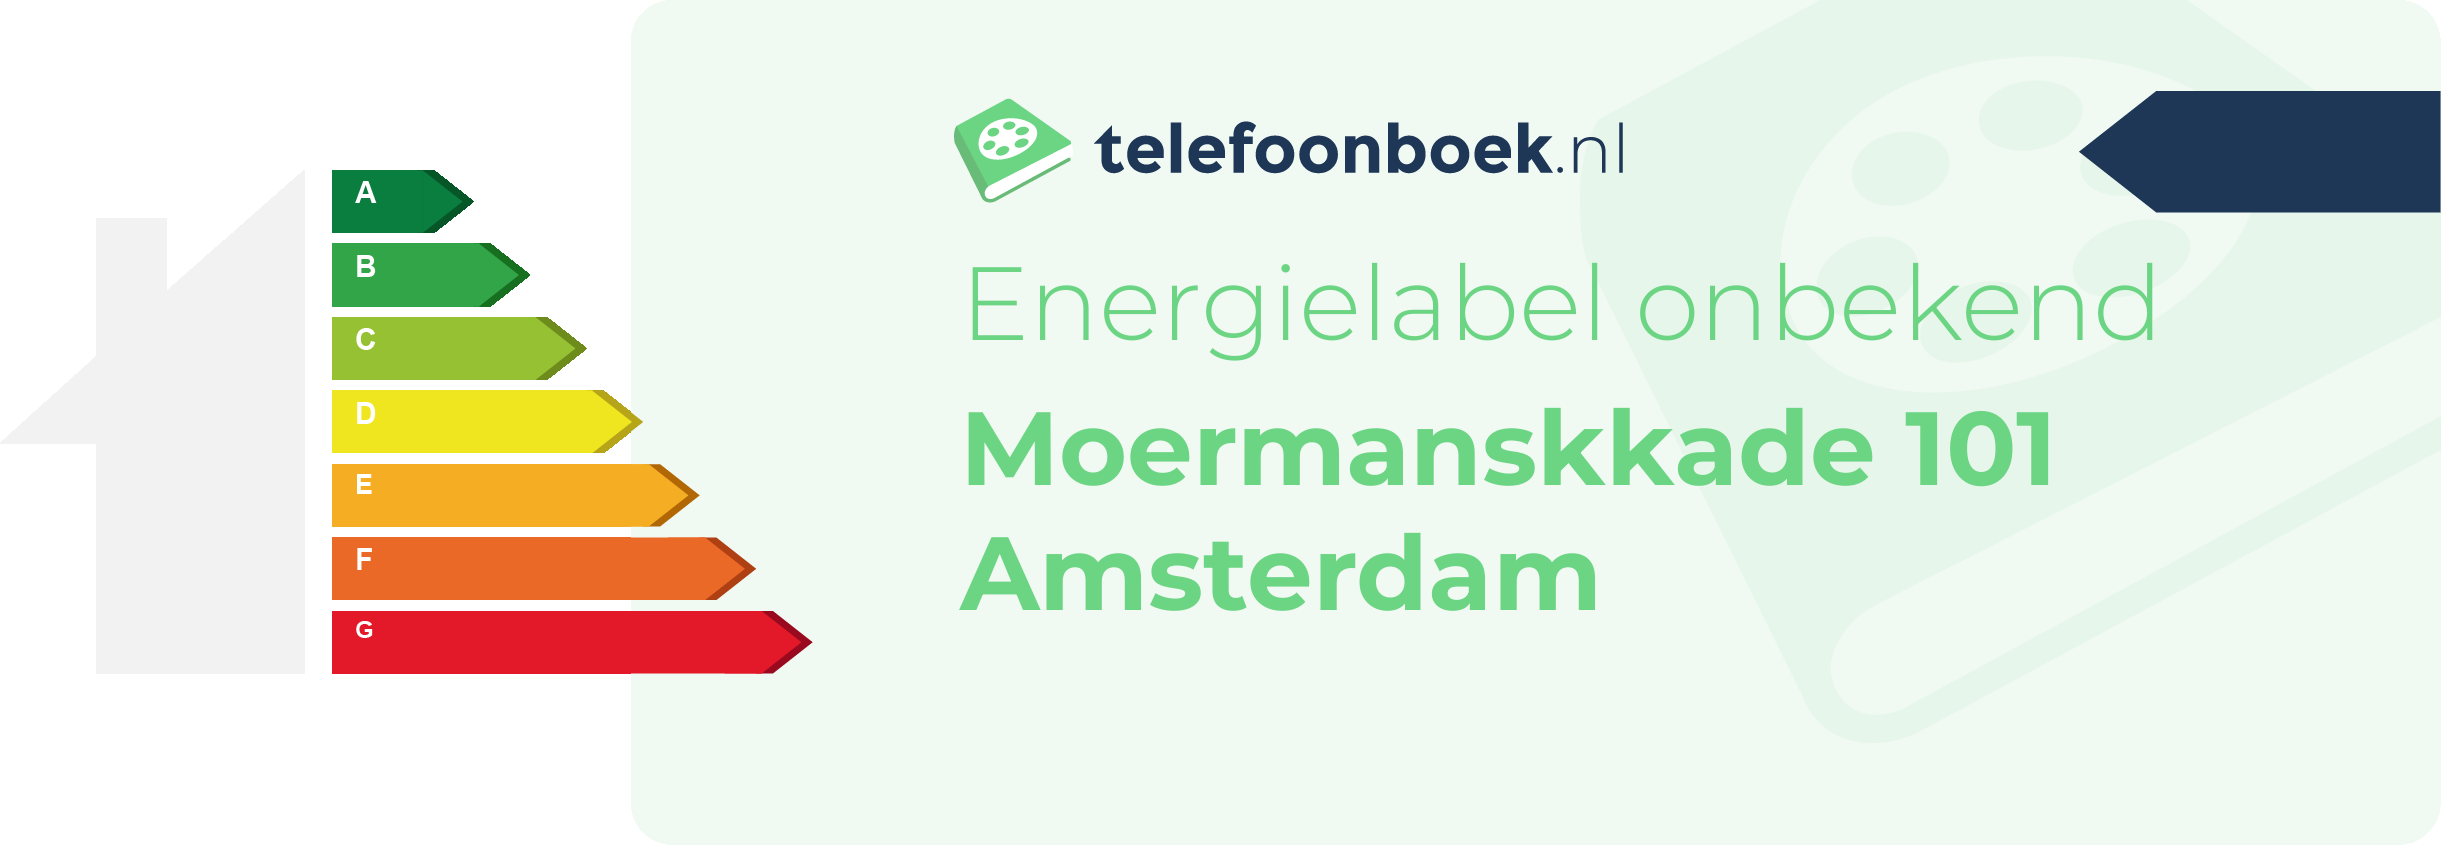 Energielabel Moermanskkade 101 Amsterdam